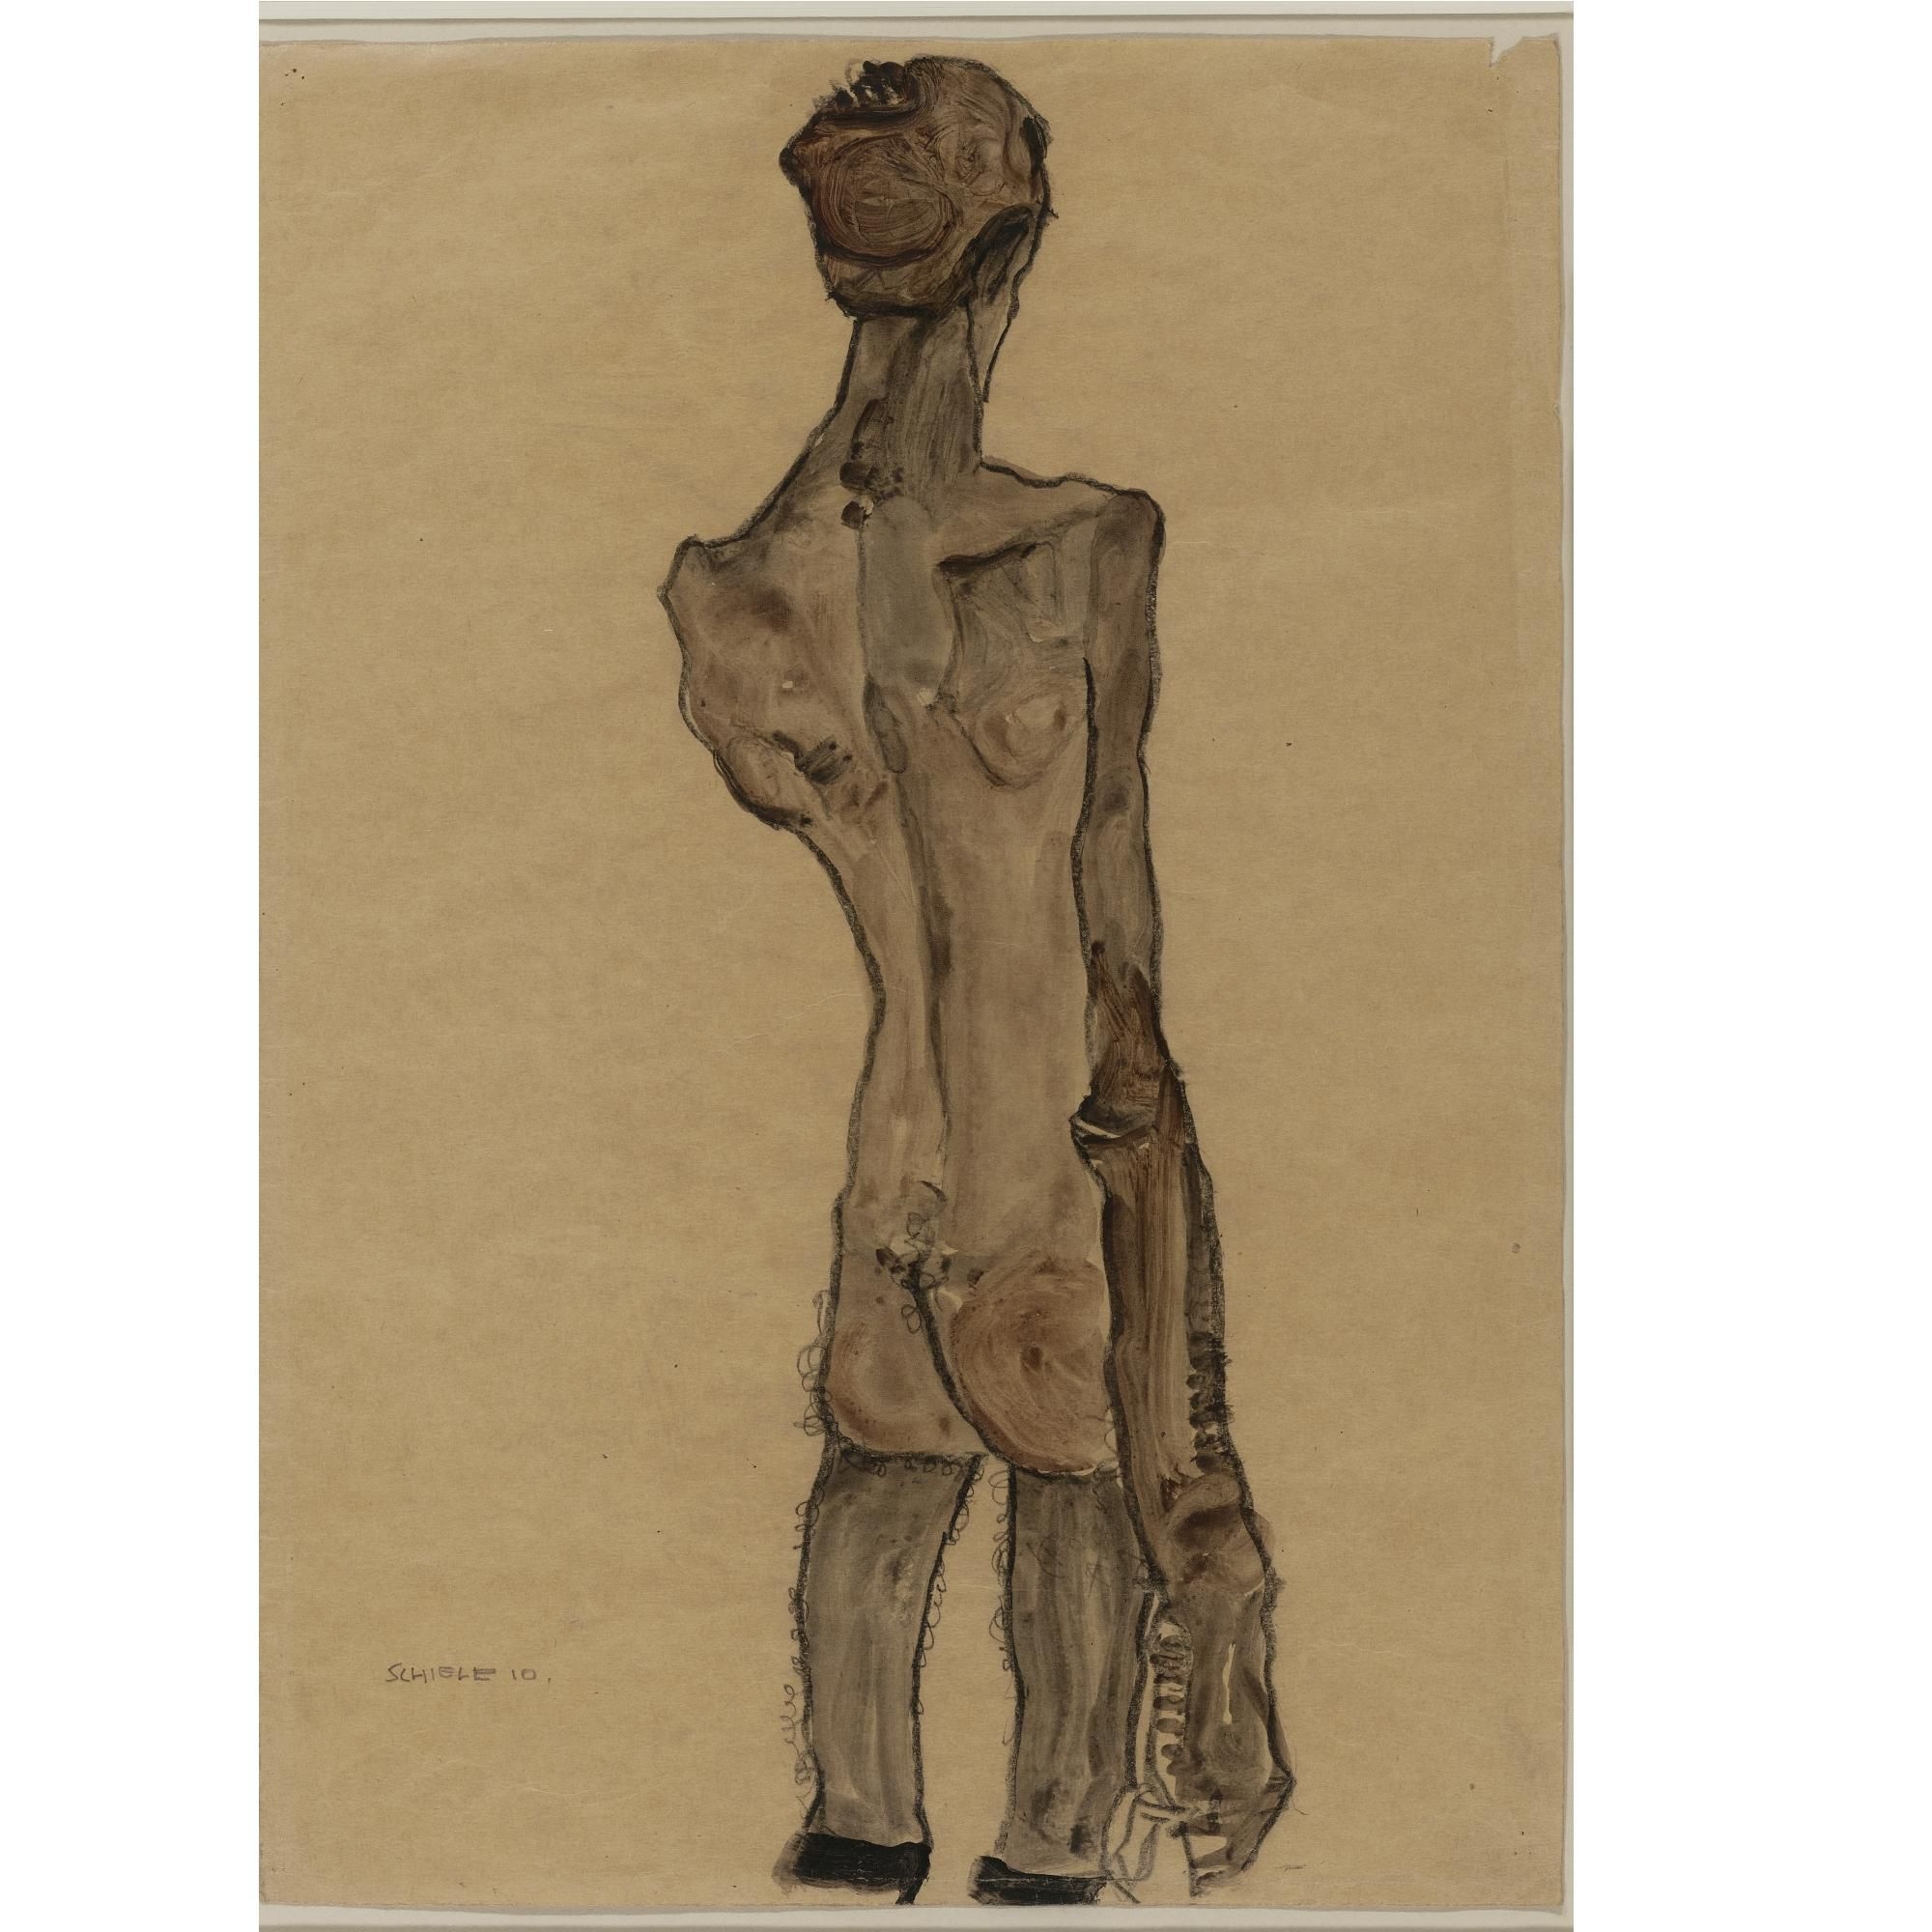 Stehender männlicher Rückenakt (Standing Male Nude, Back View) by Egon Schiele, FullFormat:,year,1910